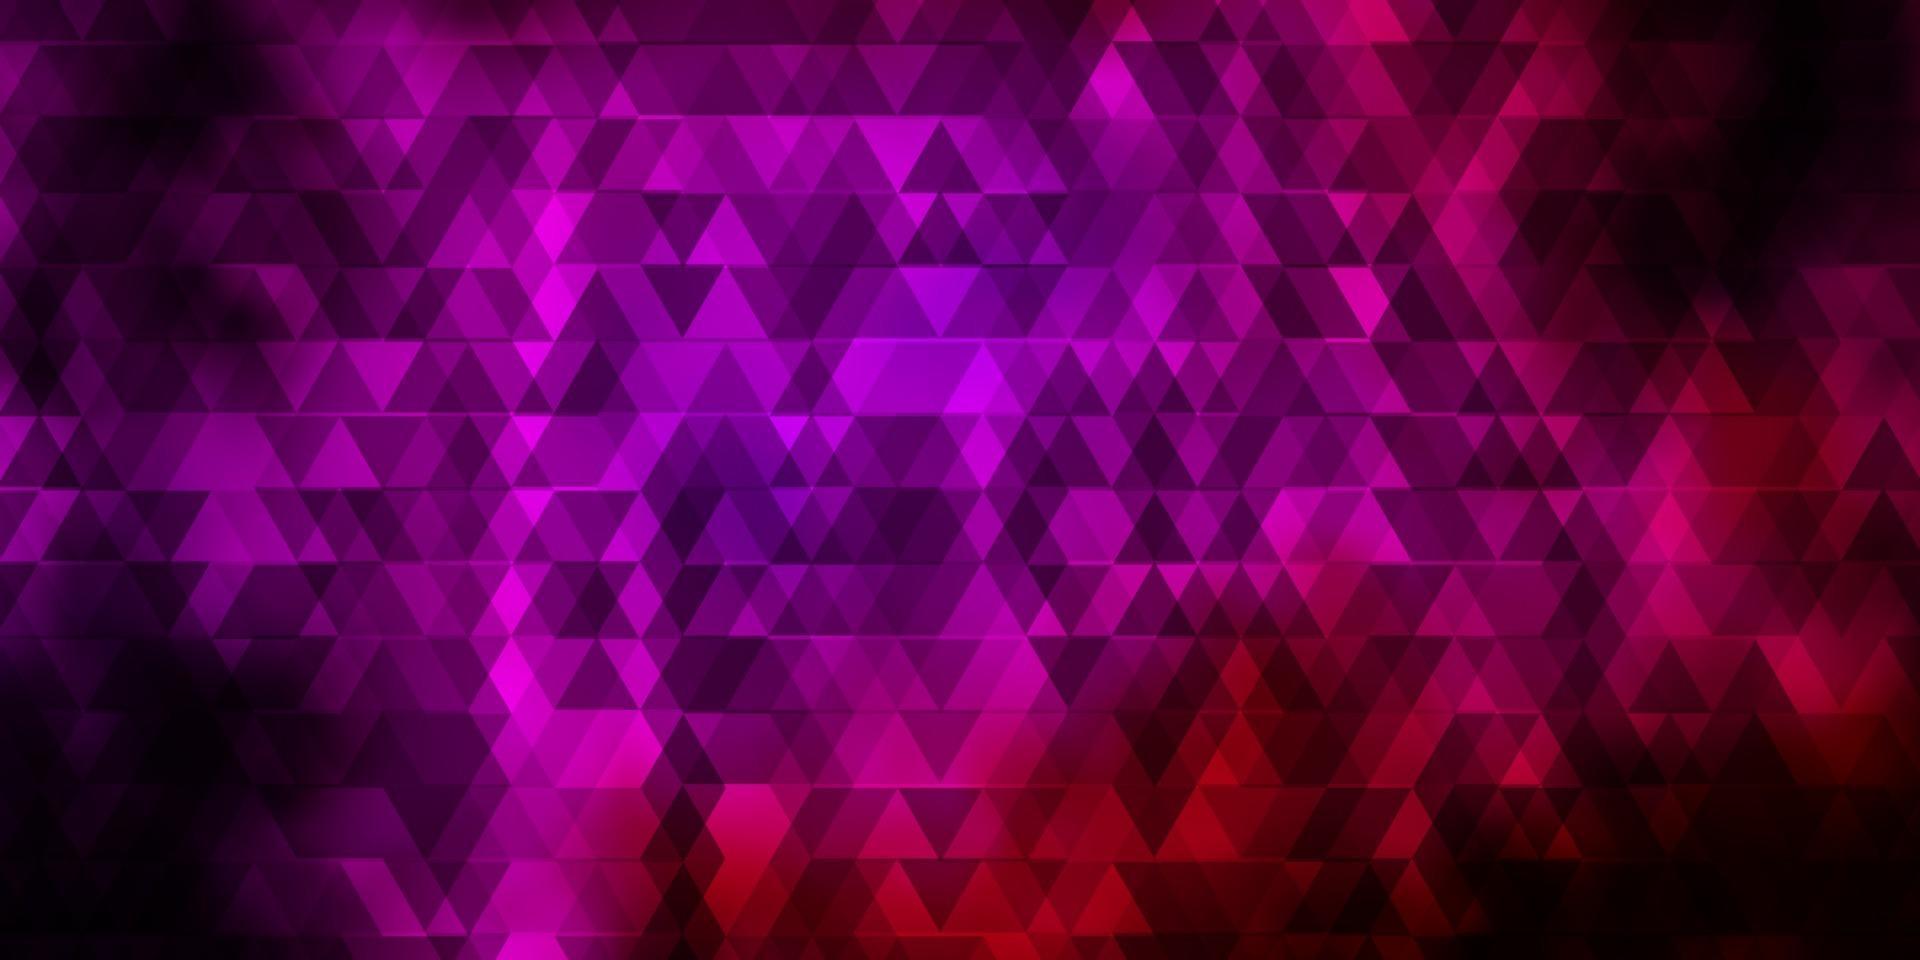 fond de vecteur rose foncé avec des lignes, des triangles.